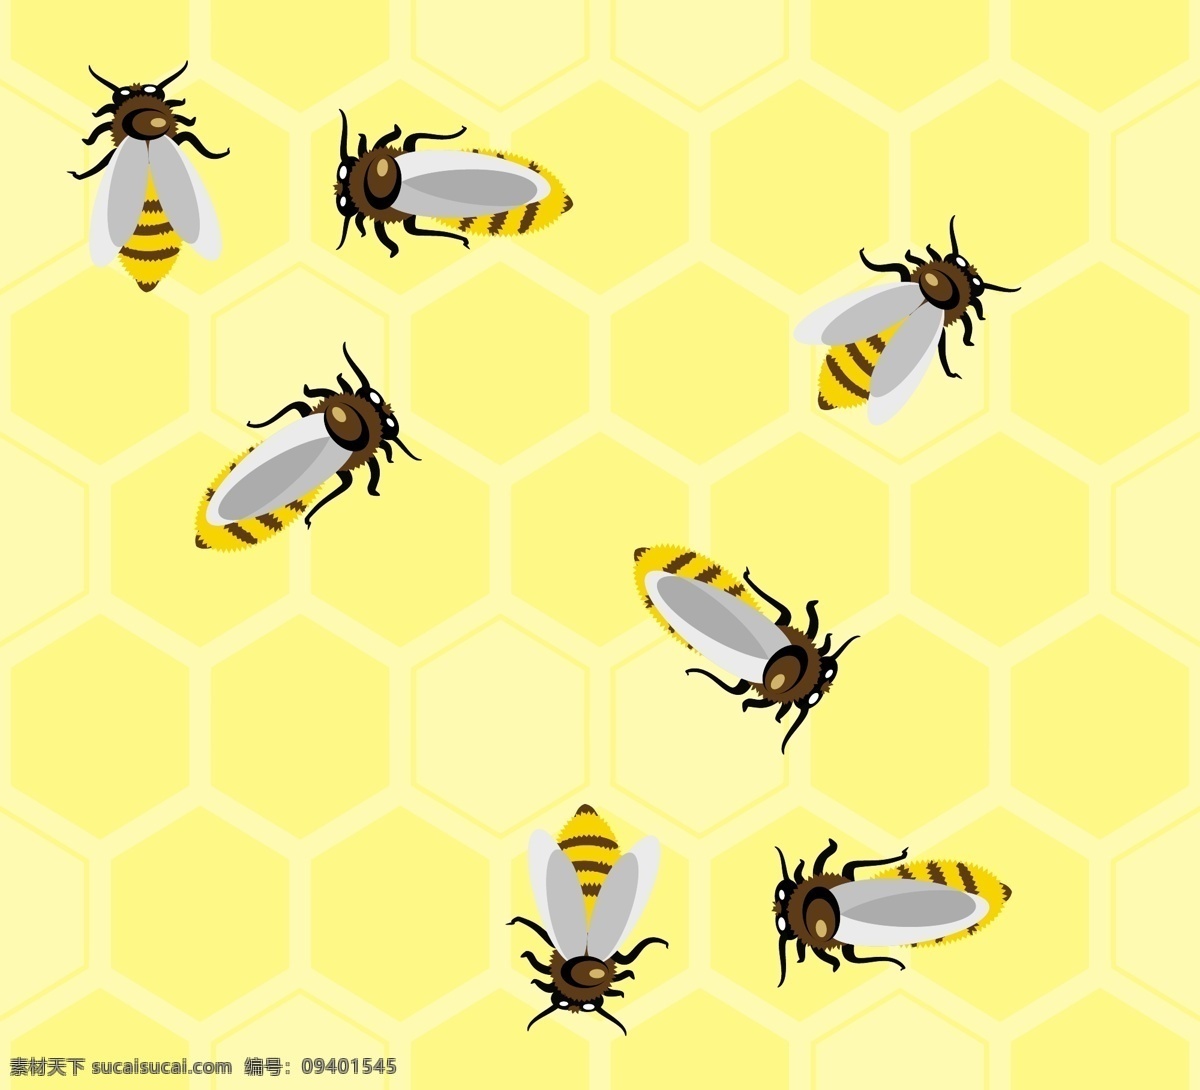 蜜蜂广告 手绘 蜜蜂 蜂蜜产品 蜜蜂设计 蜂蜜 生物世界 昆虫